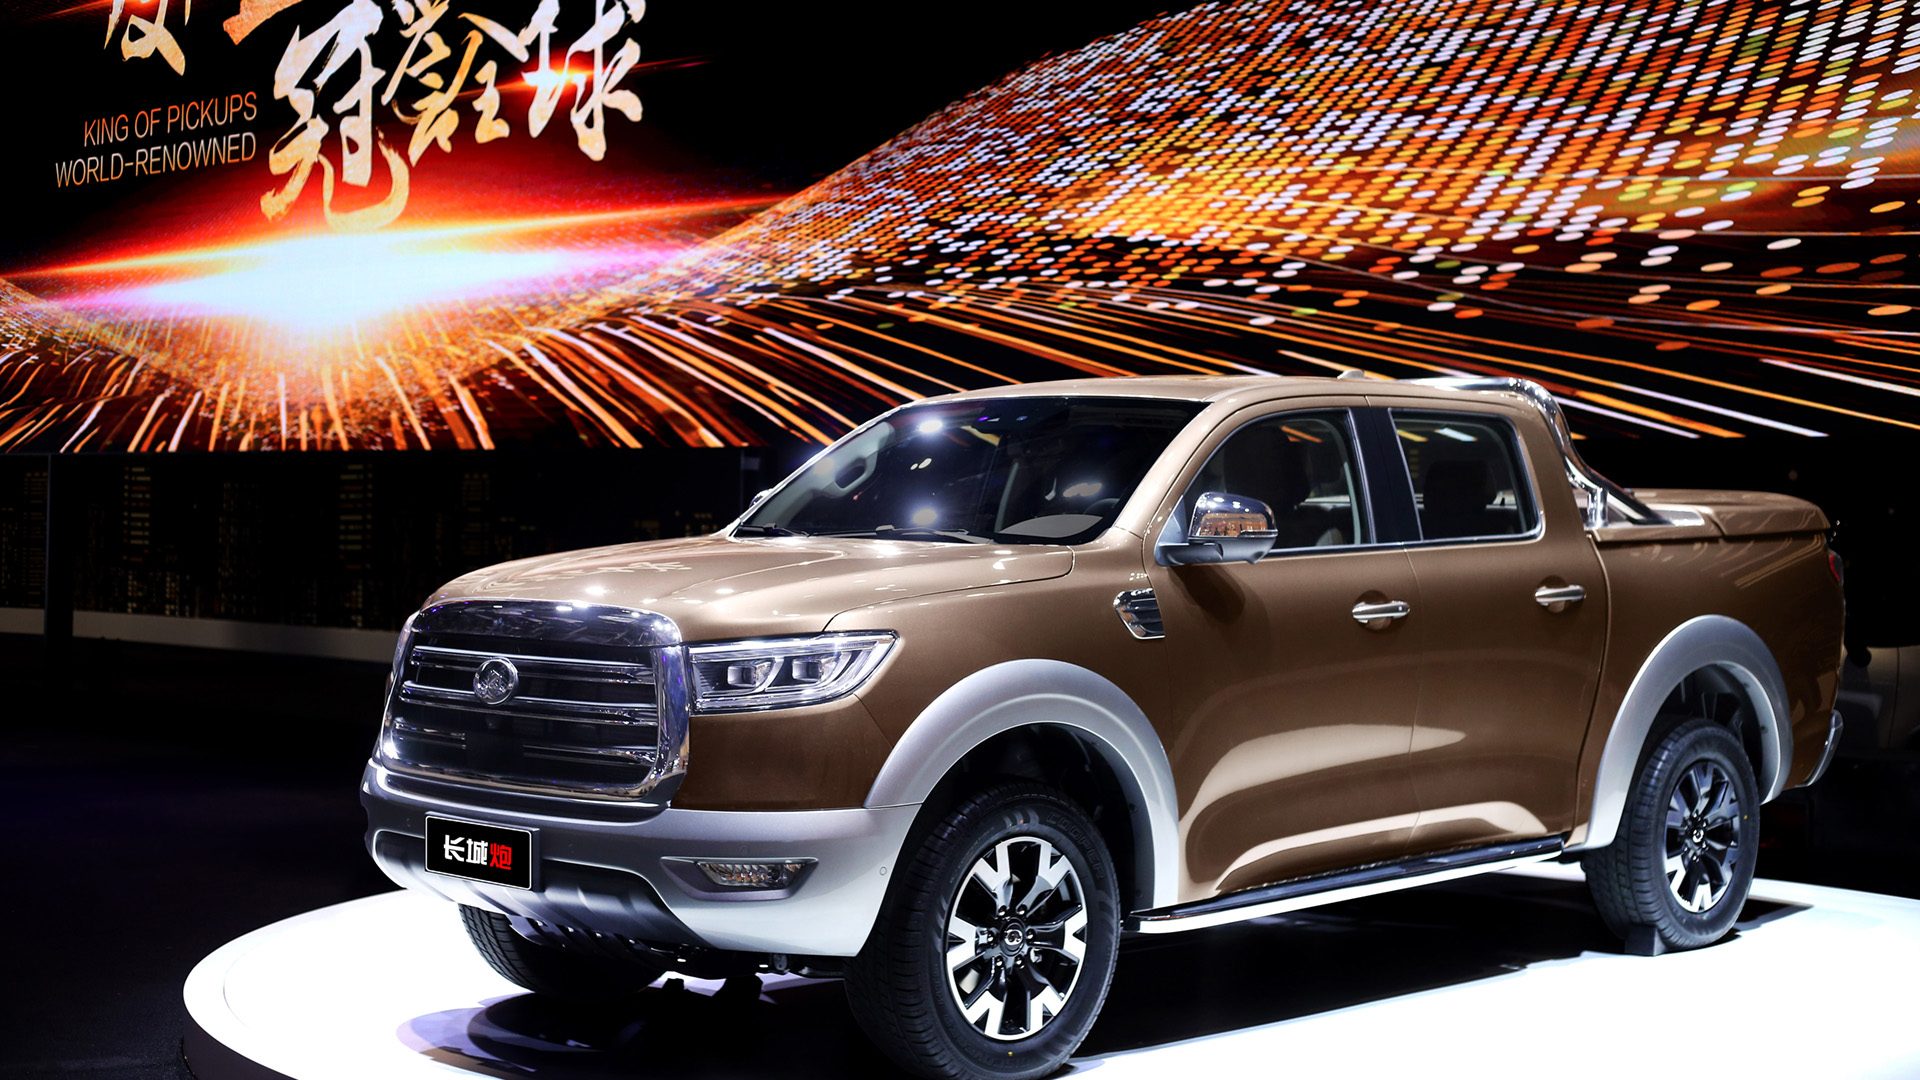 Les ventes mondiales de pick-up chinois GWM dépassent 2 millions d’unités